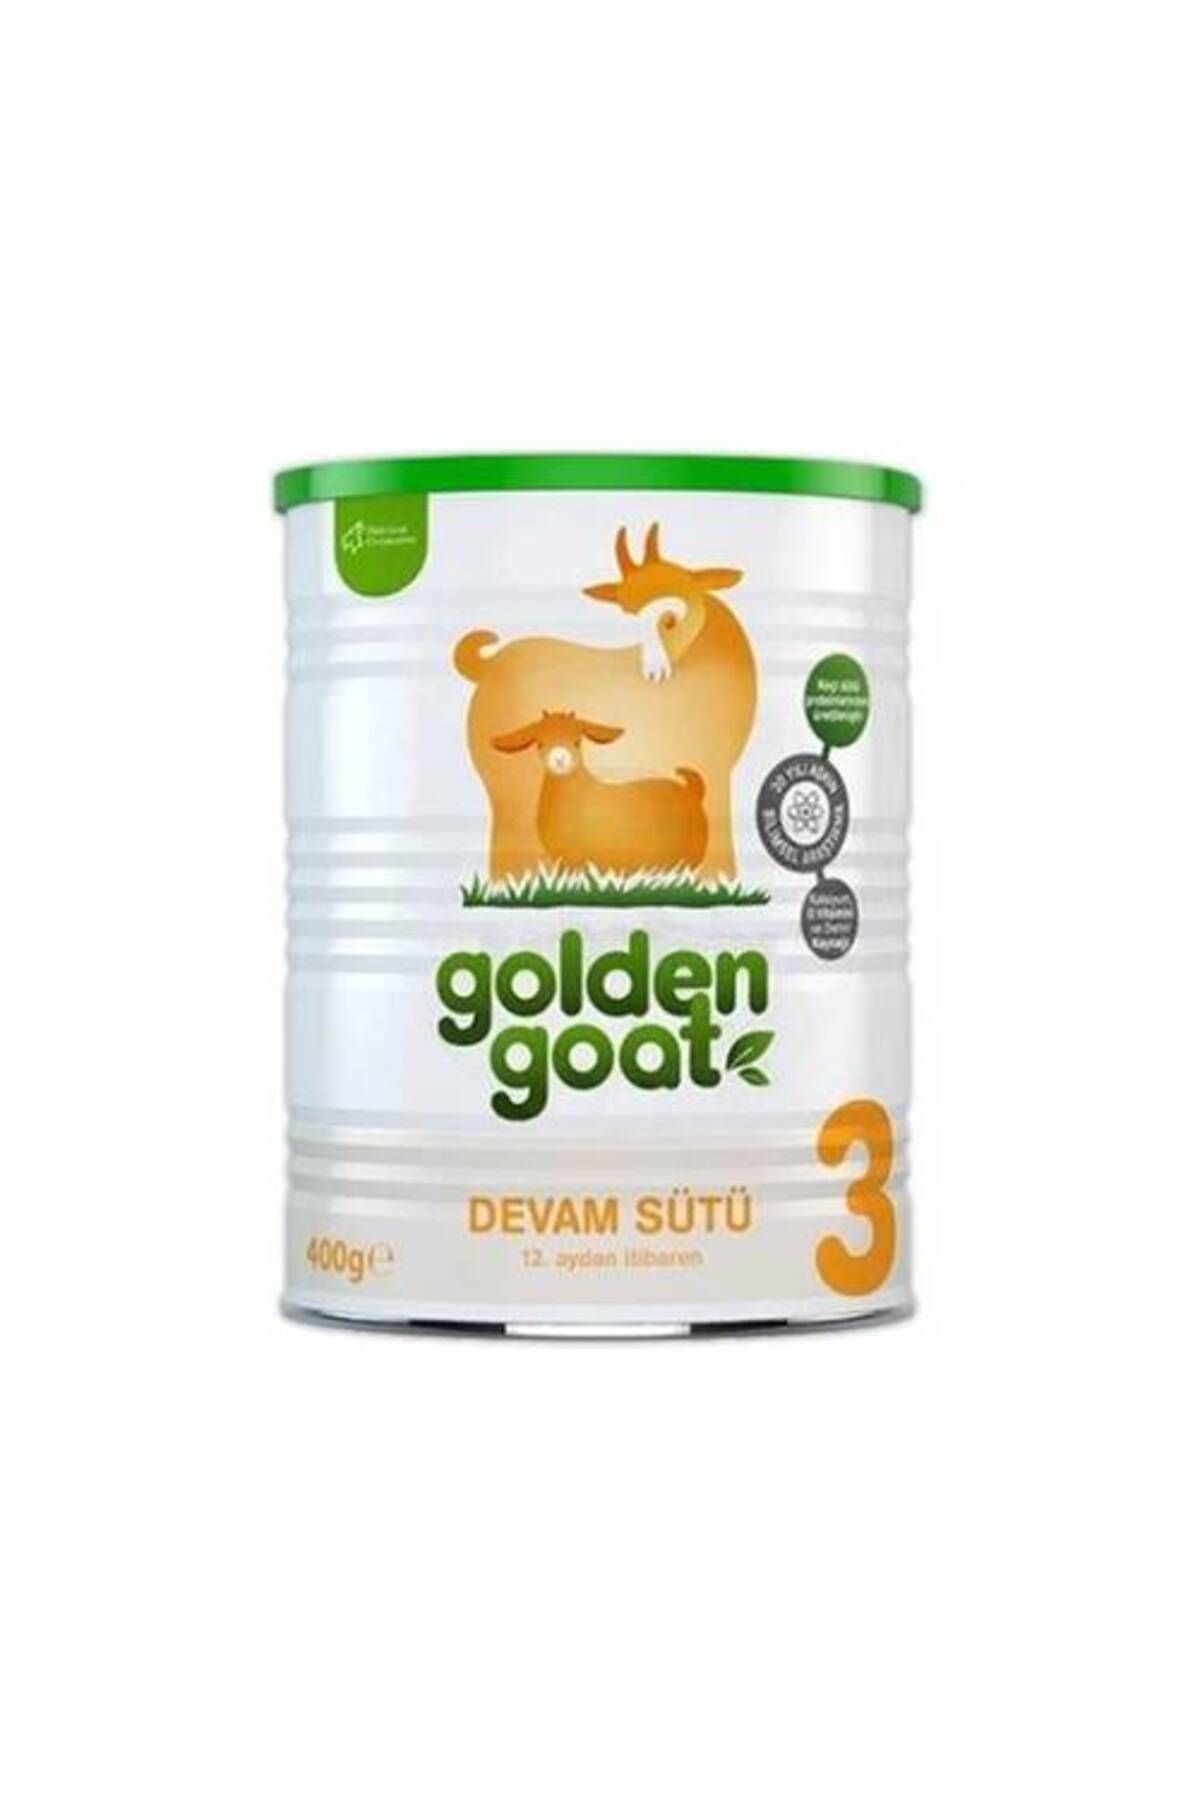 Golden Goat 3 Keçi Devam Sütü 400gr - Yeni